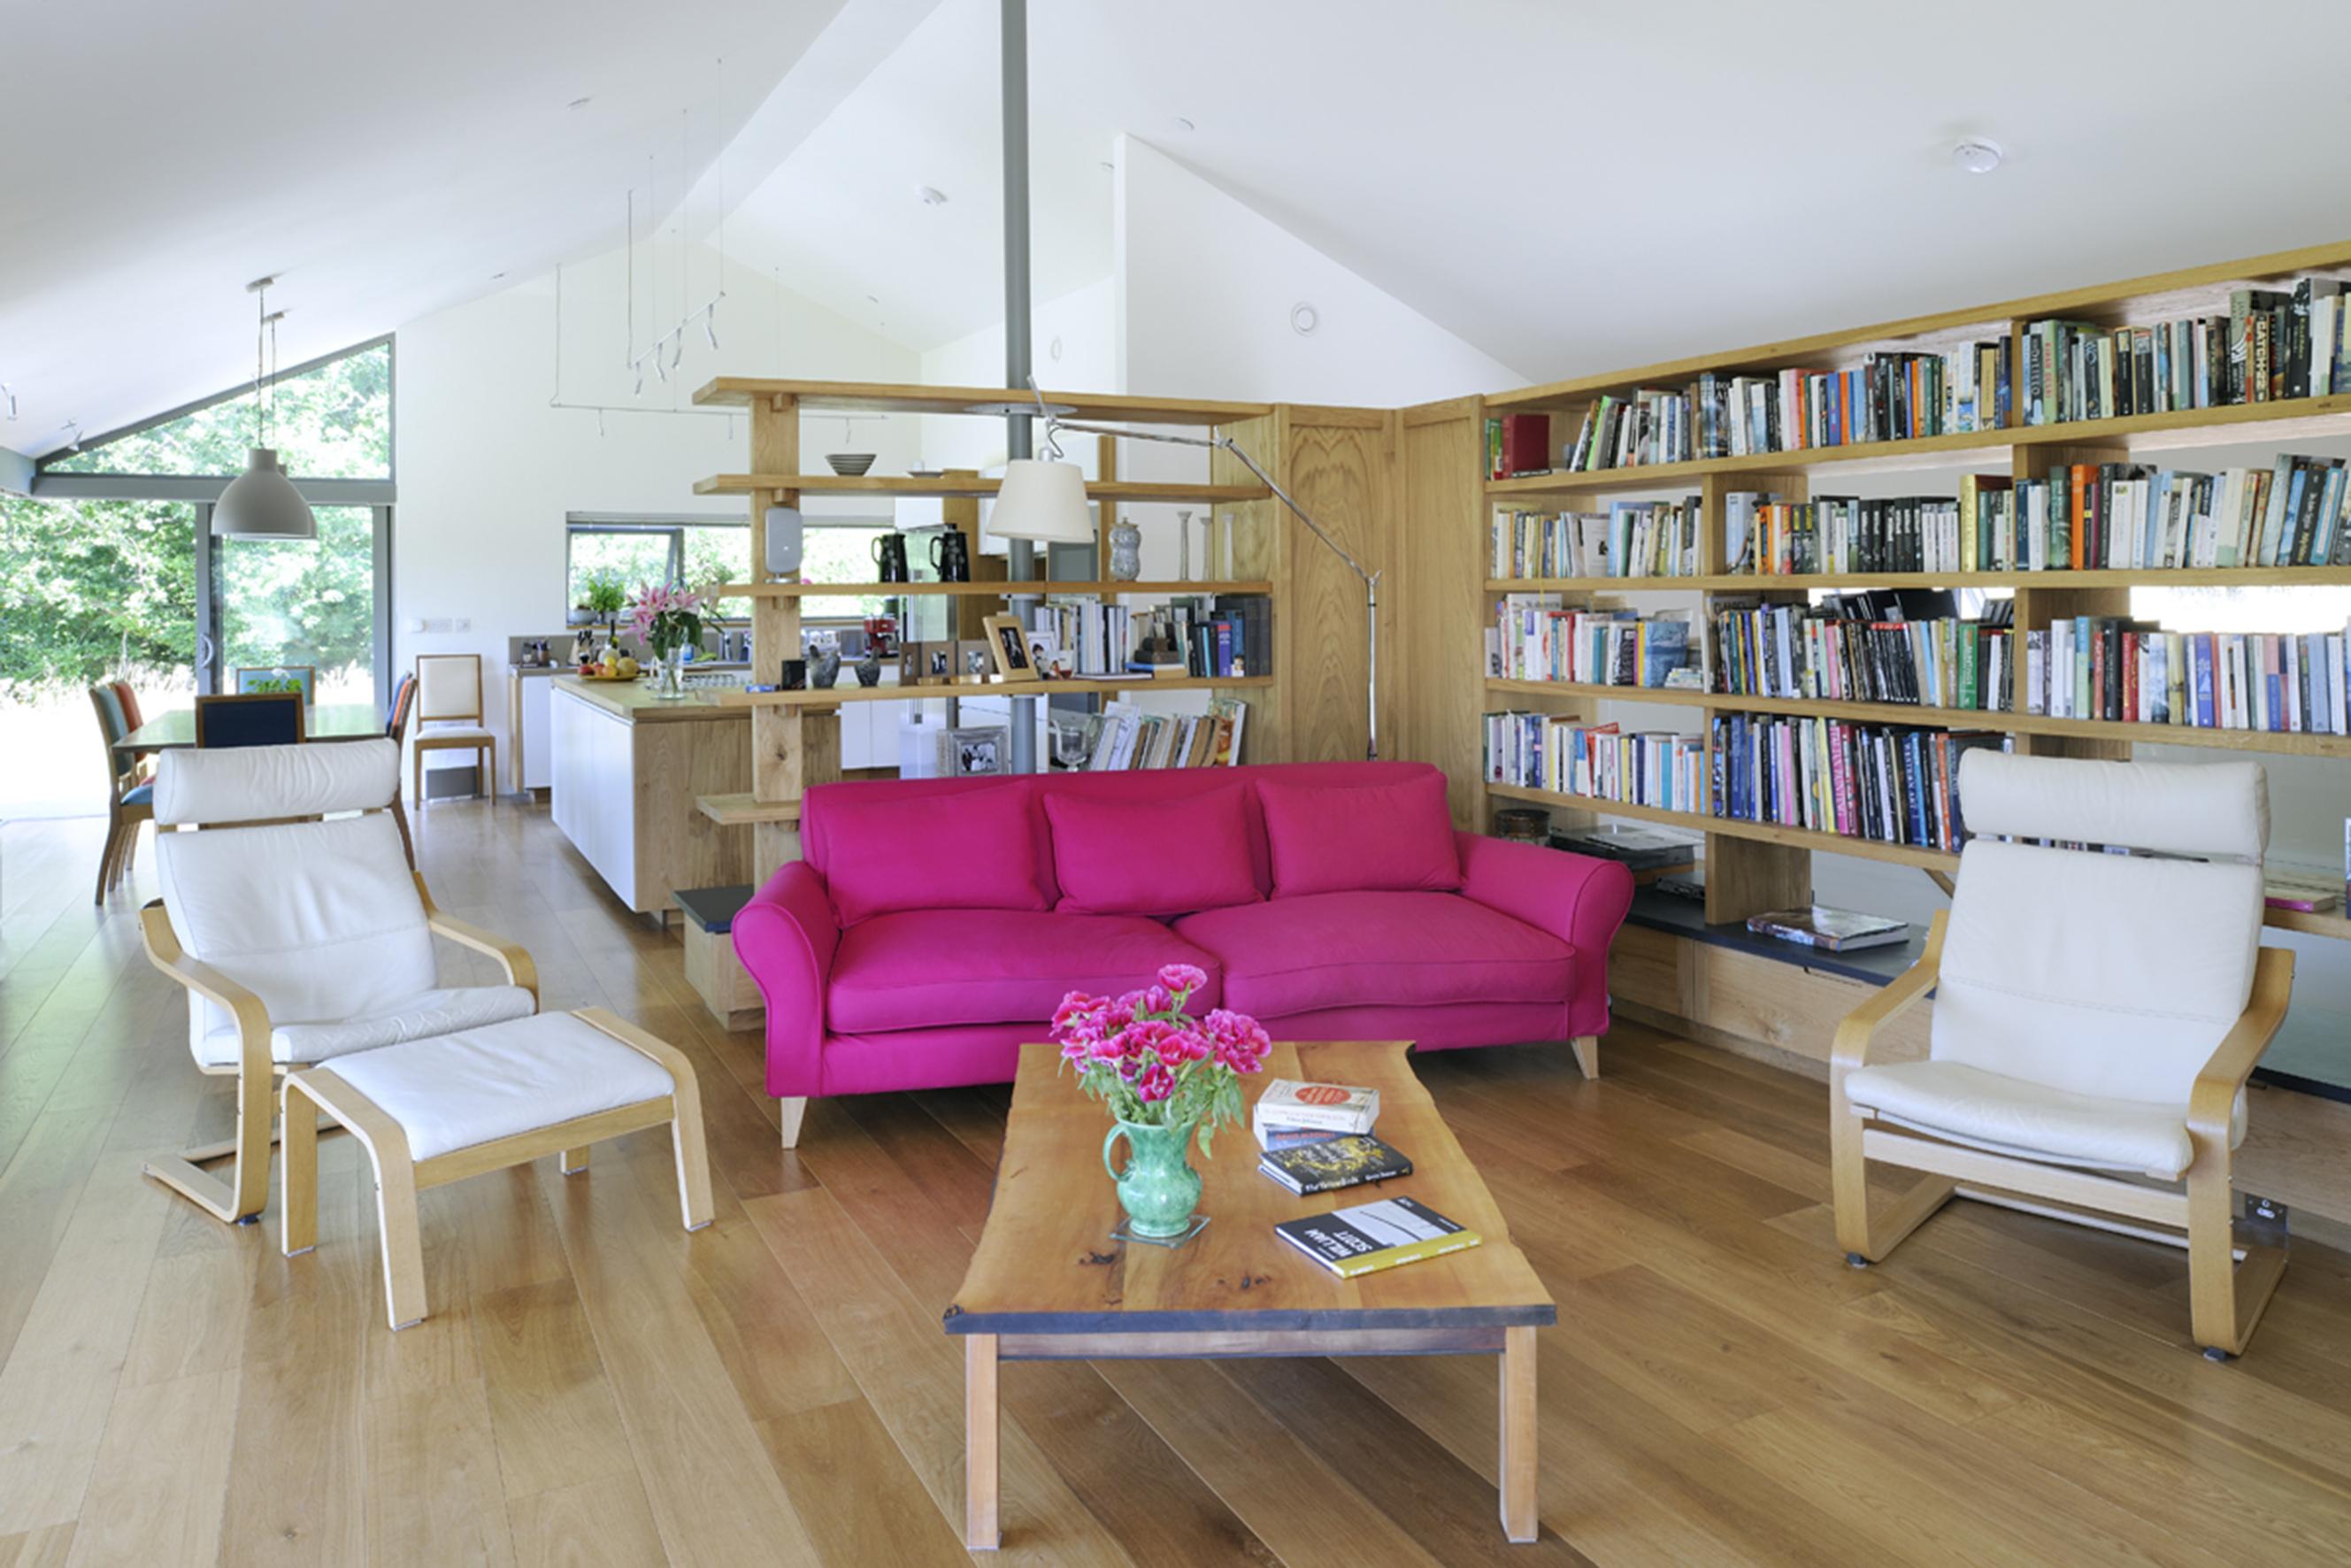 Pinkfarbenes Sofa #couchtisch #bücherregal #offenerwohnraum ©Manser Medal/Nigel Rigden, Architekt: Annie Martin Architect